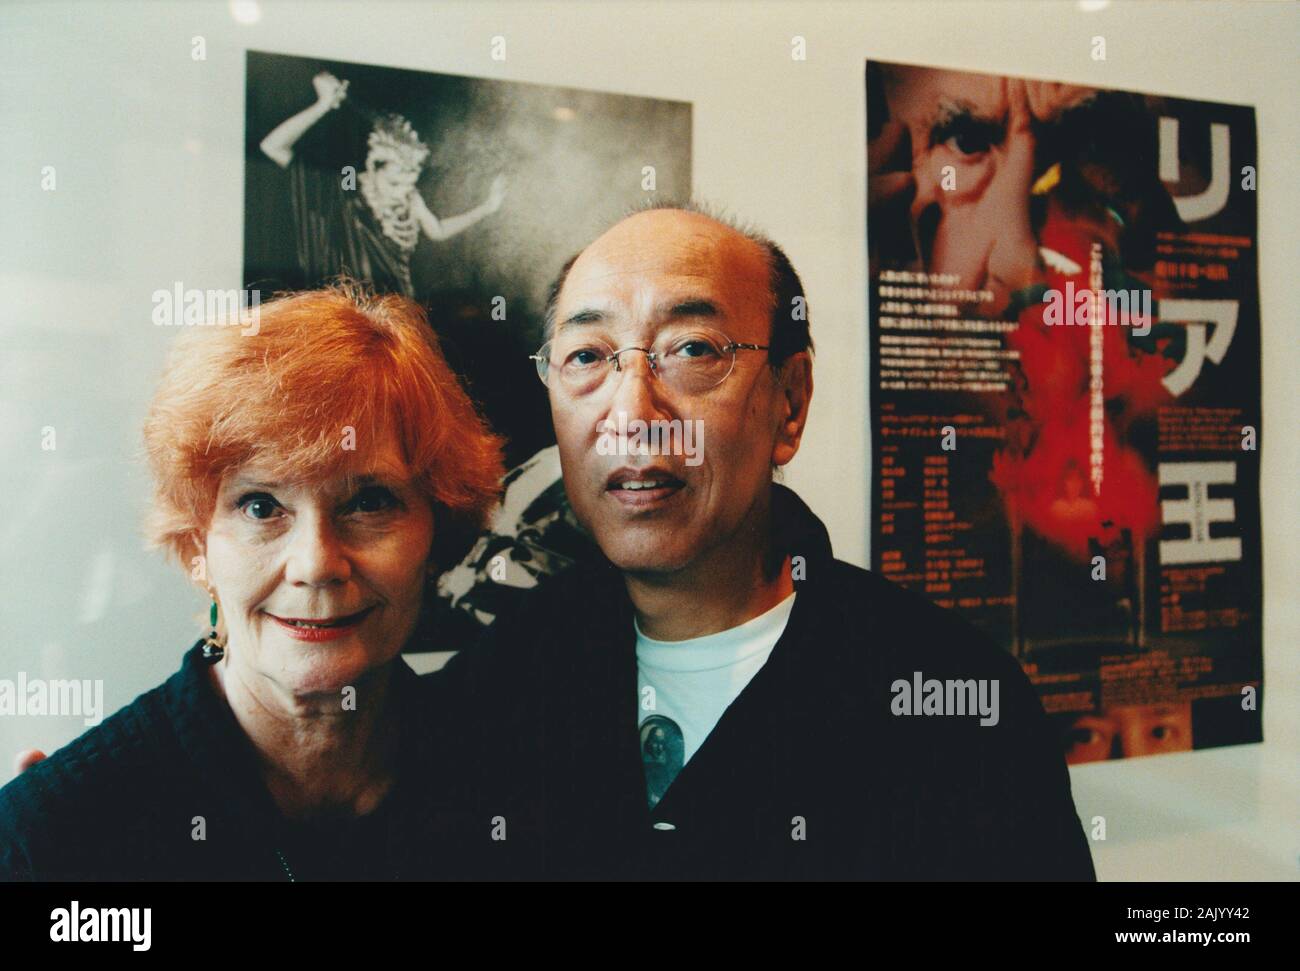 Britische theater Produzentin und Schauspielerin Thelma Holt (1932-) fotografiert mit japanischen Theater Regisseur Yukio Ninagawa (1935-2016) an der Saitama Arts Theater, Tokio, Japan im Jahr 1999 Stockfoto